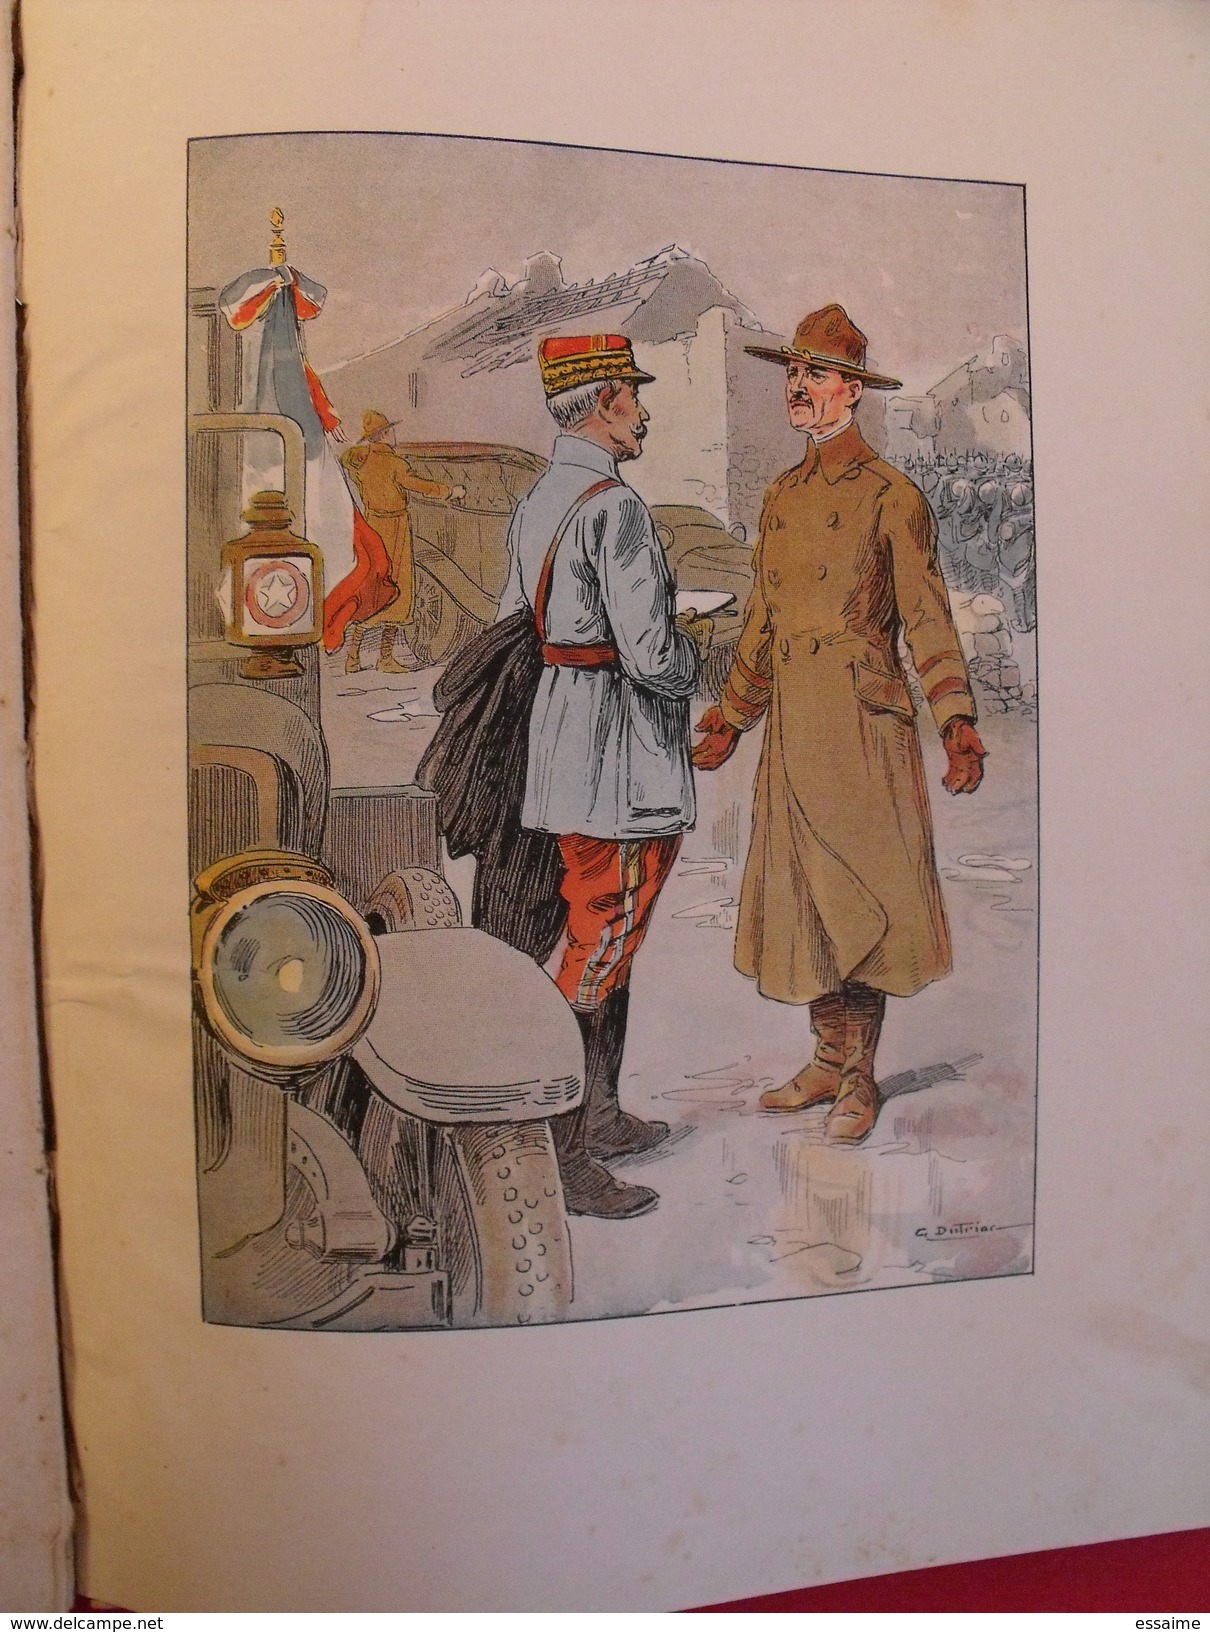 Foch. texte d'émile Hinzelin. illustrations de Dutriac. Delagrave 1918